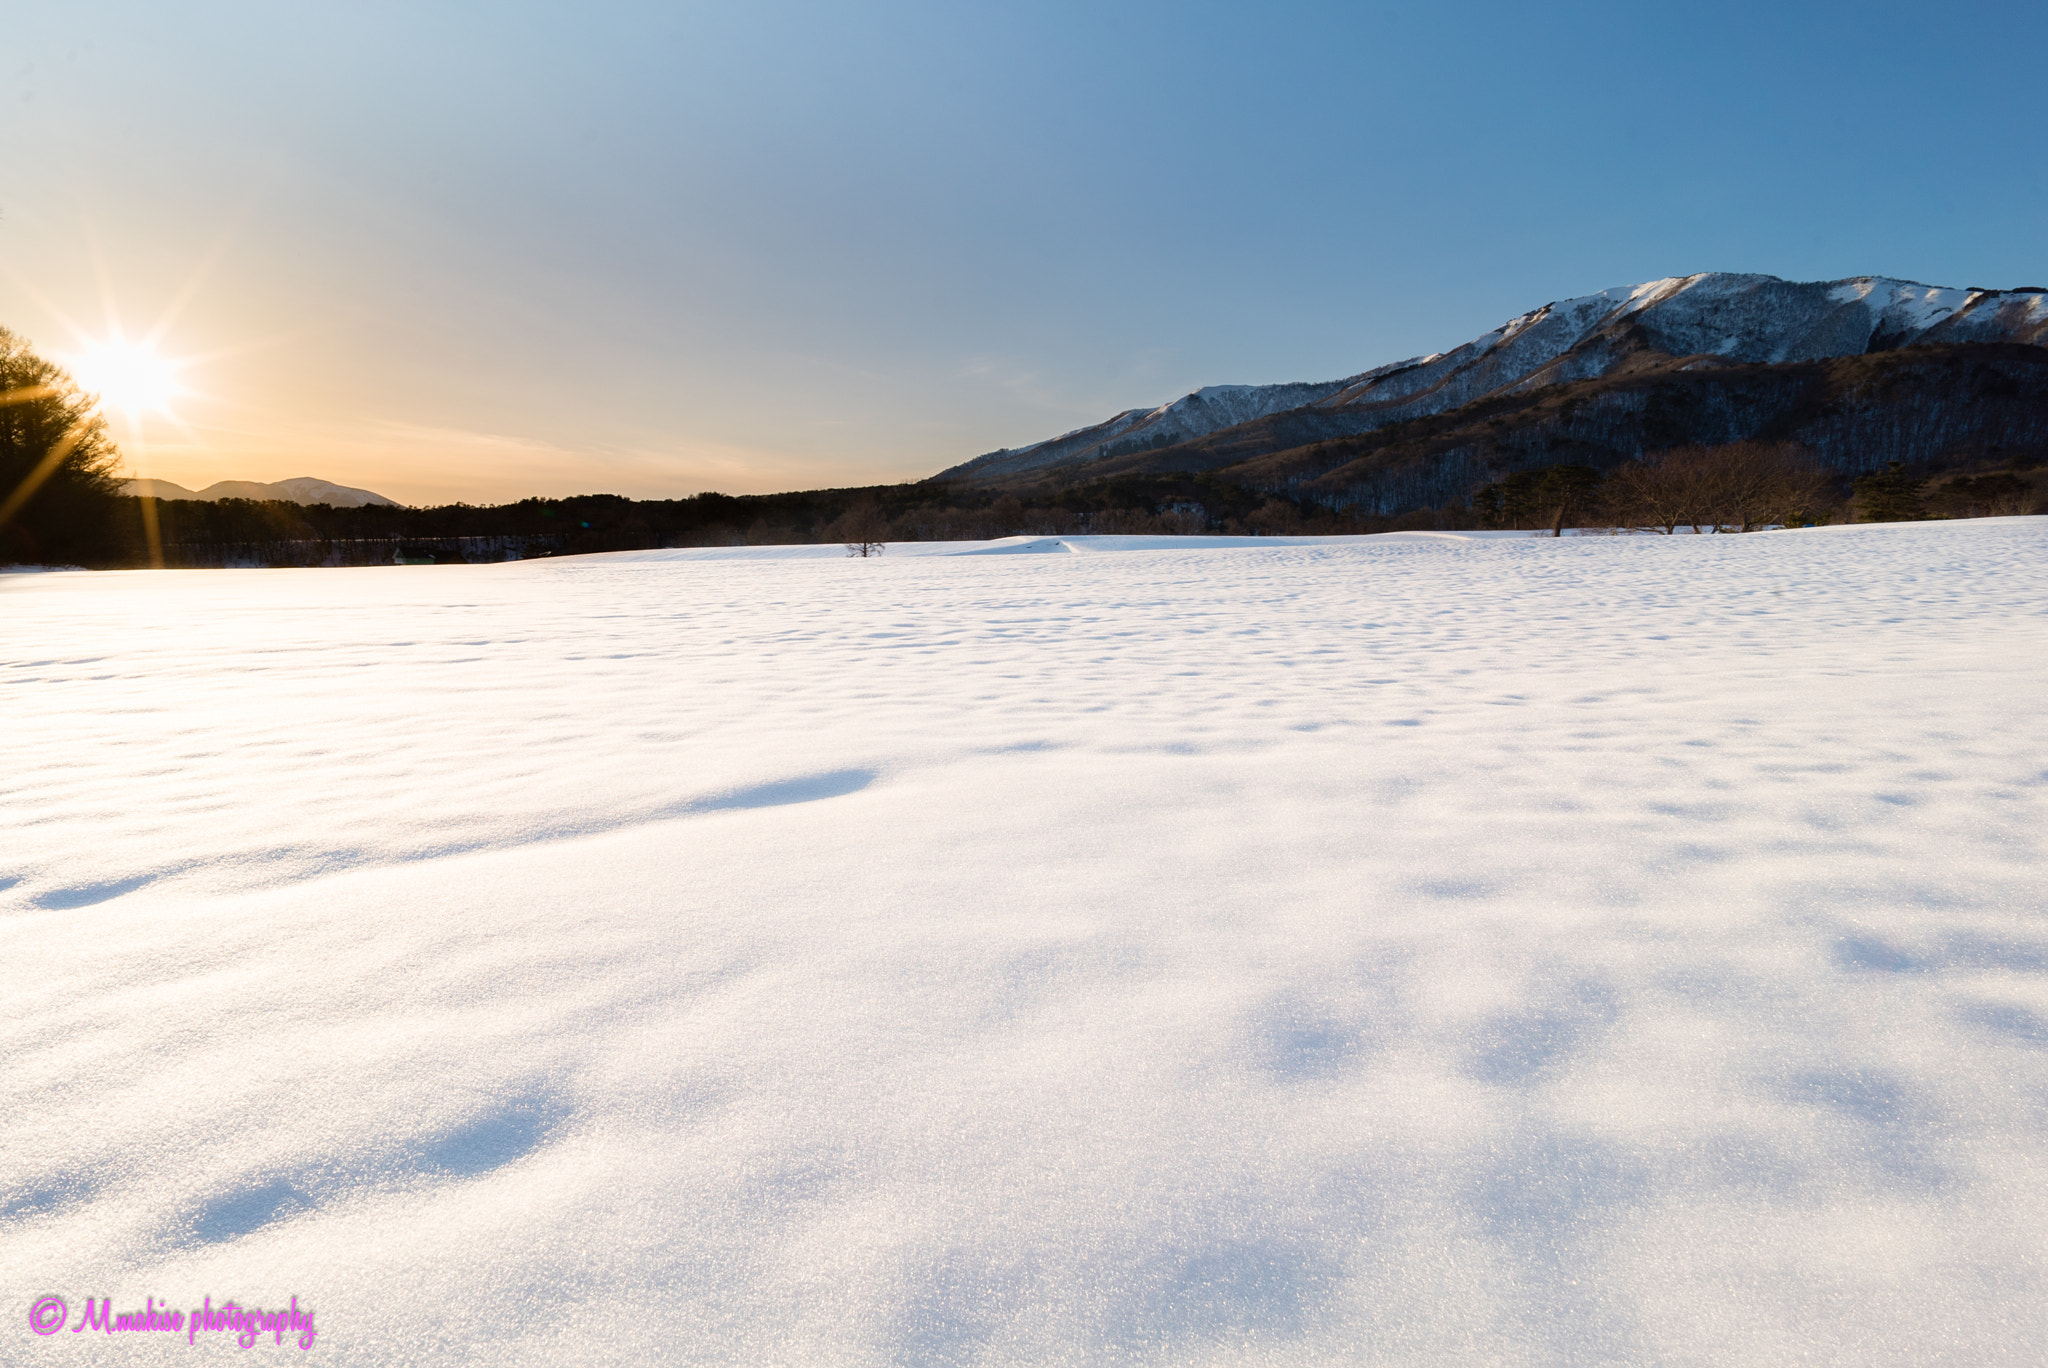 Sony a7S sample photo. Snow plateau at dusk photography